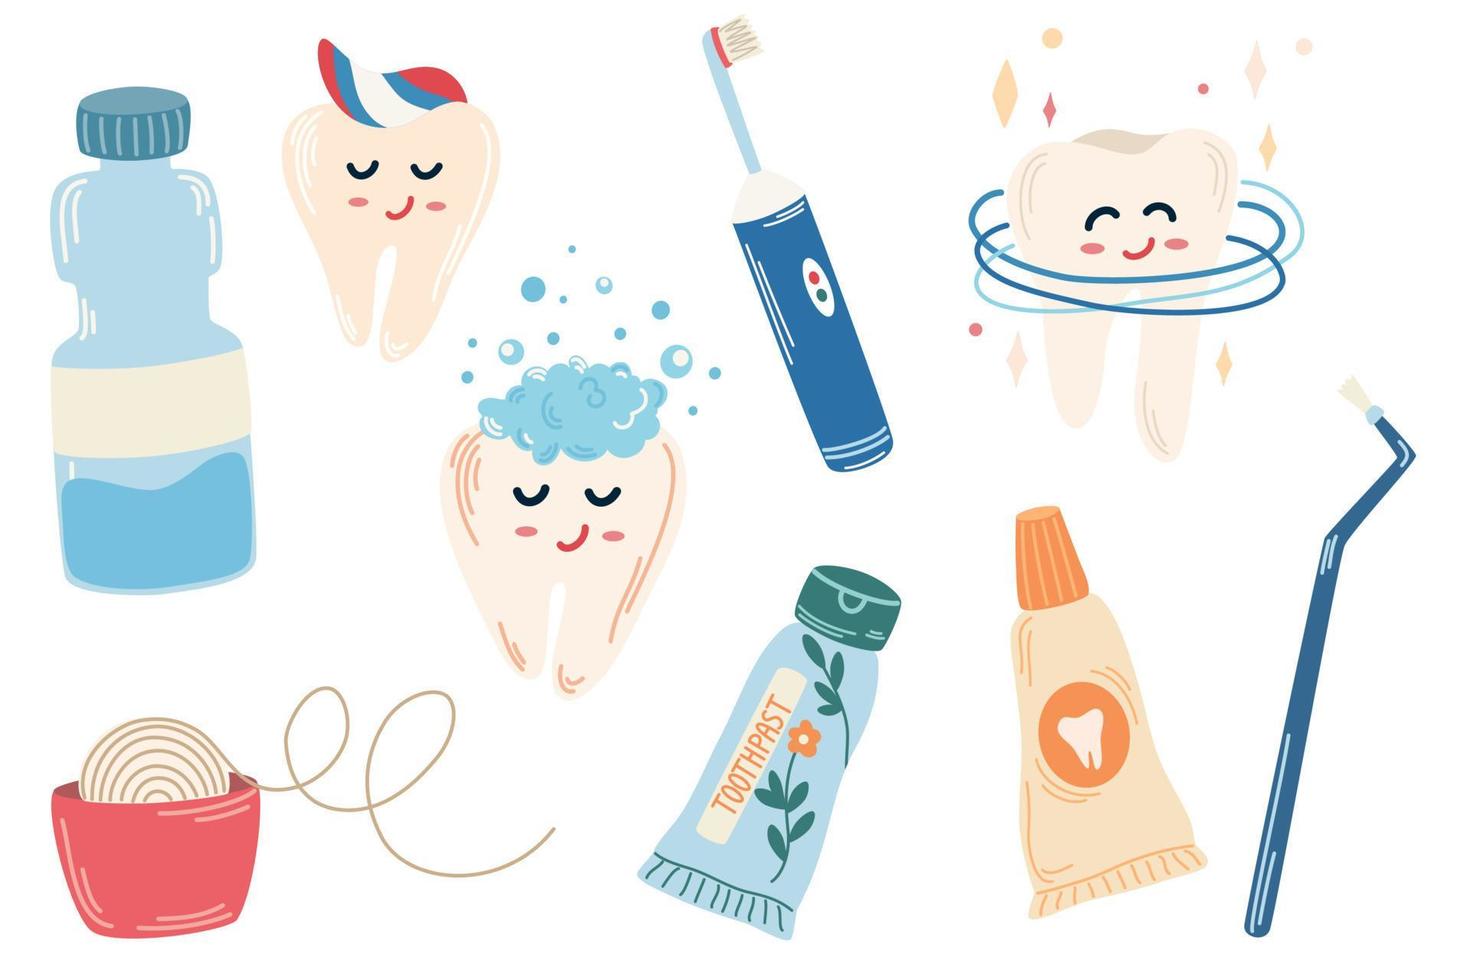 limpieza de dientes juego de limpieza de dientes, pasta de dientes, cepillo, hilo dental, dientes felices. concepto abstracto de cuidado dental y bucal. ilustración de vector plano contemporáneo de dibujos animados